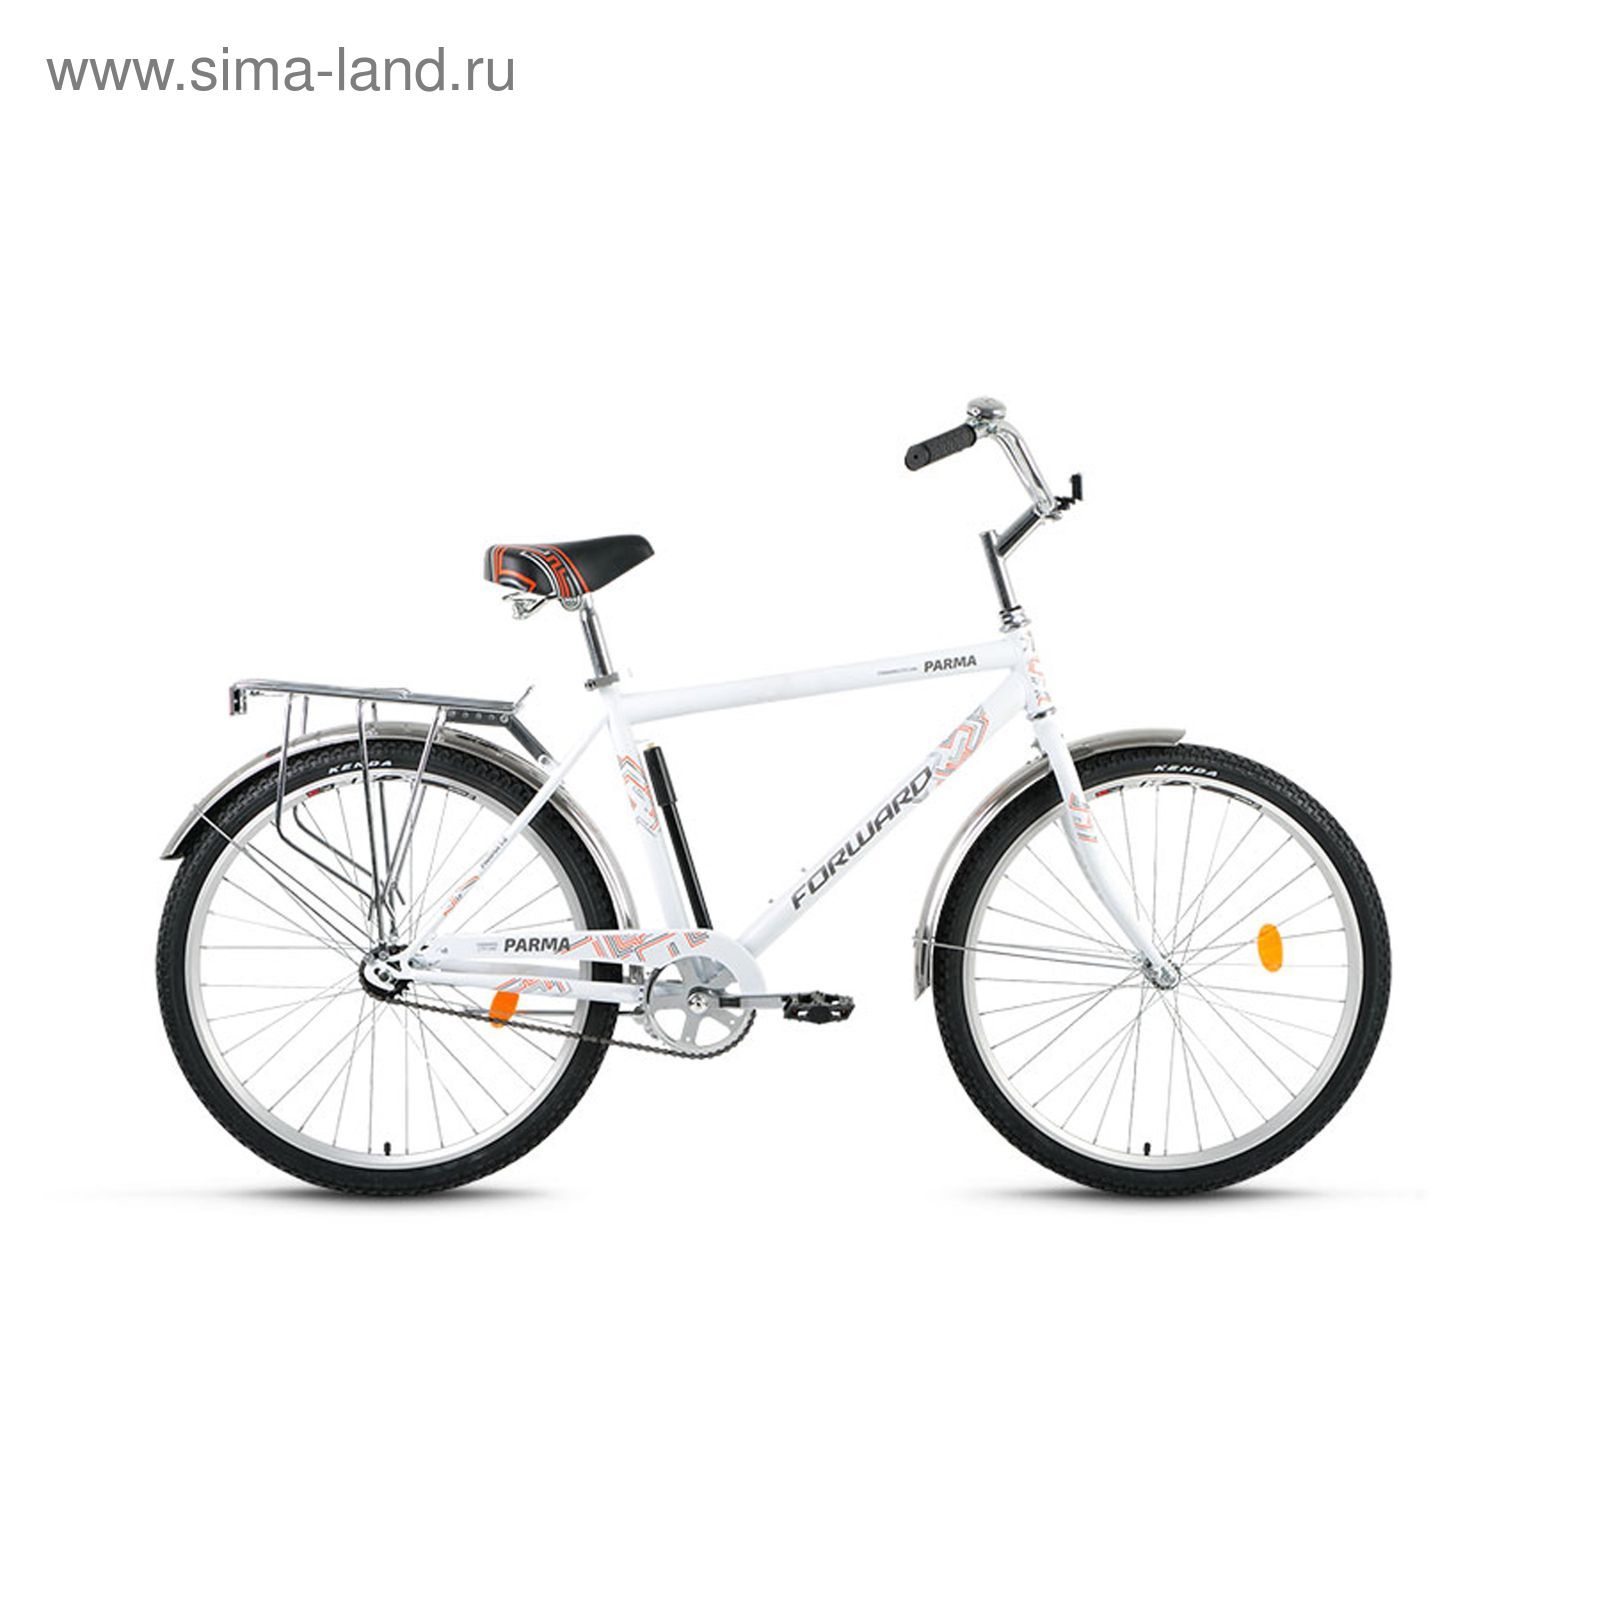 Велосипед 26" Forward Parma 1.0, 2017, цвет белый, размер 19"